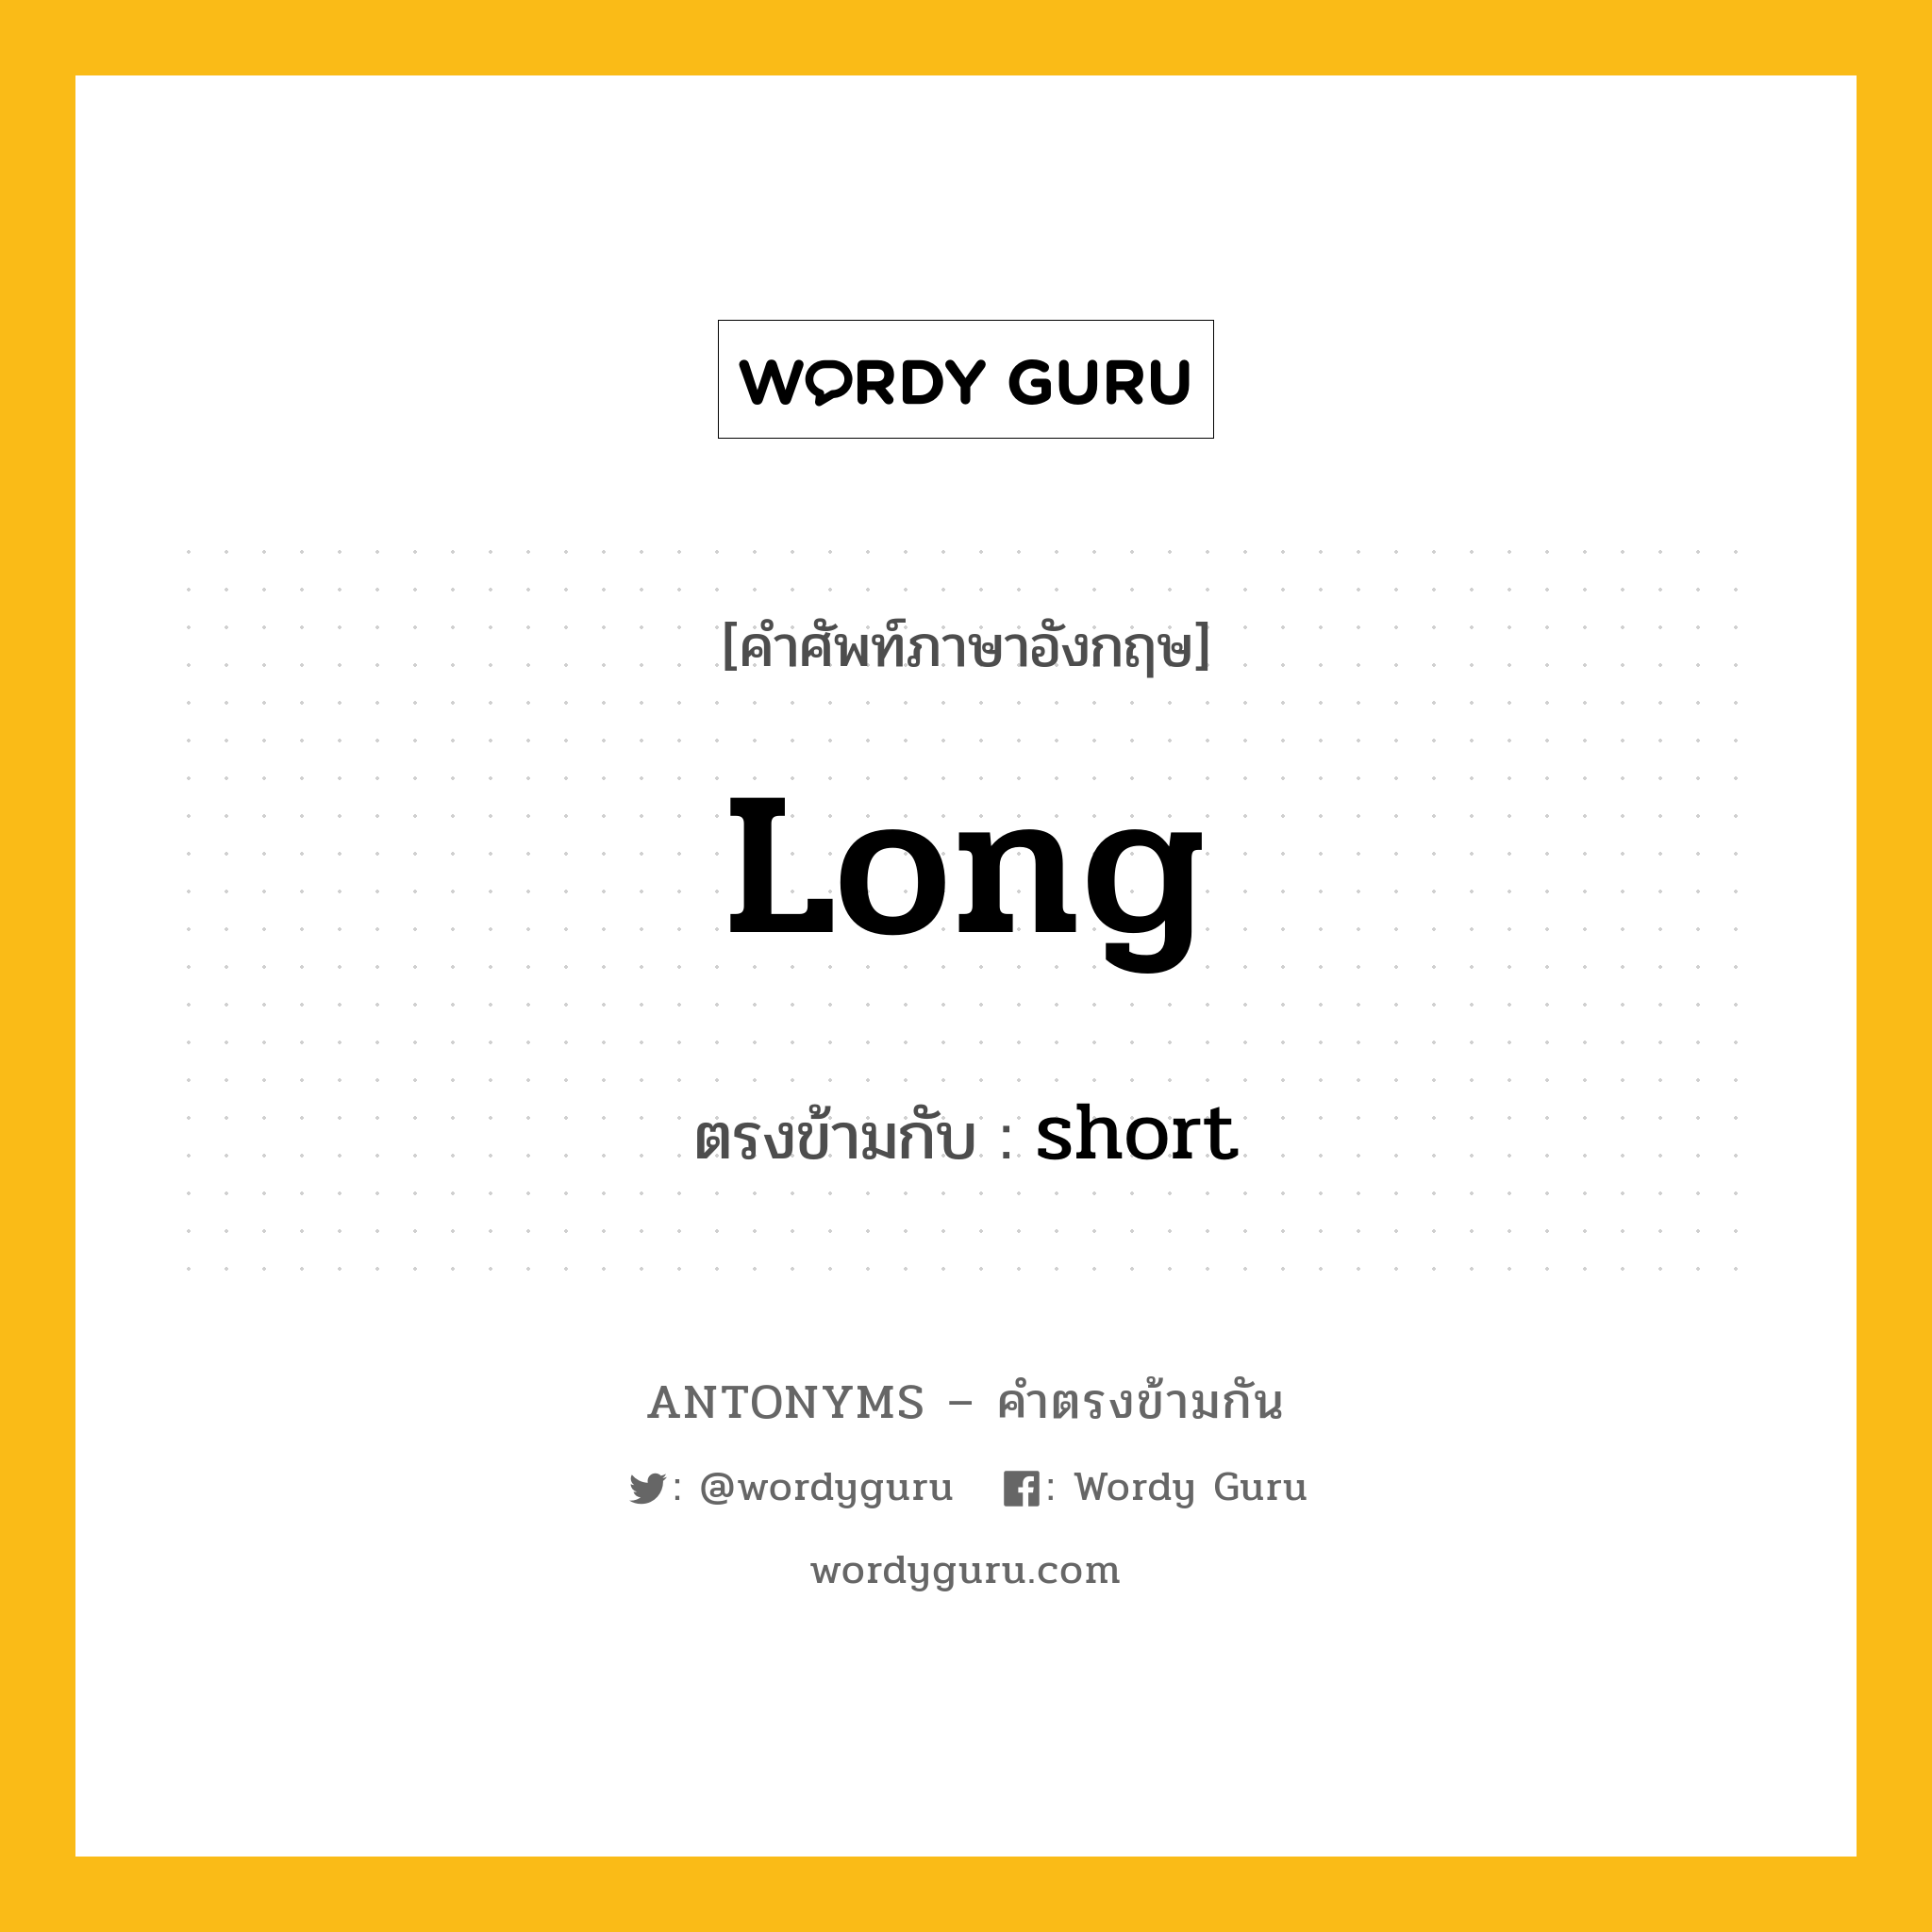 long เป็นคำตรงข้ามกับคำไหนบ้าง?, คำศัพท์ภาษาอังกฤษ long ตรงข้ามกับ short หมวด short